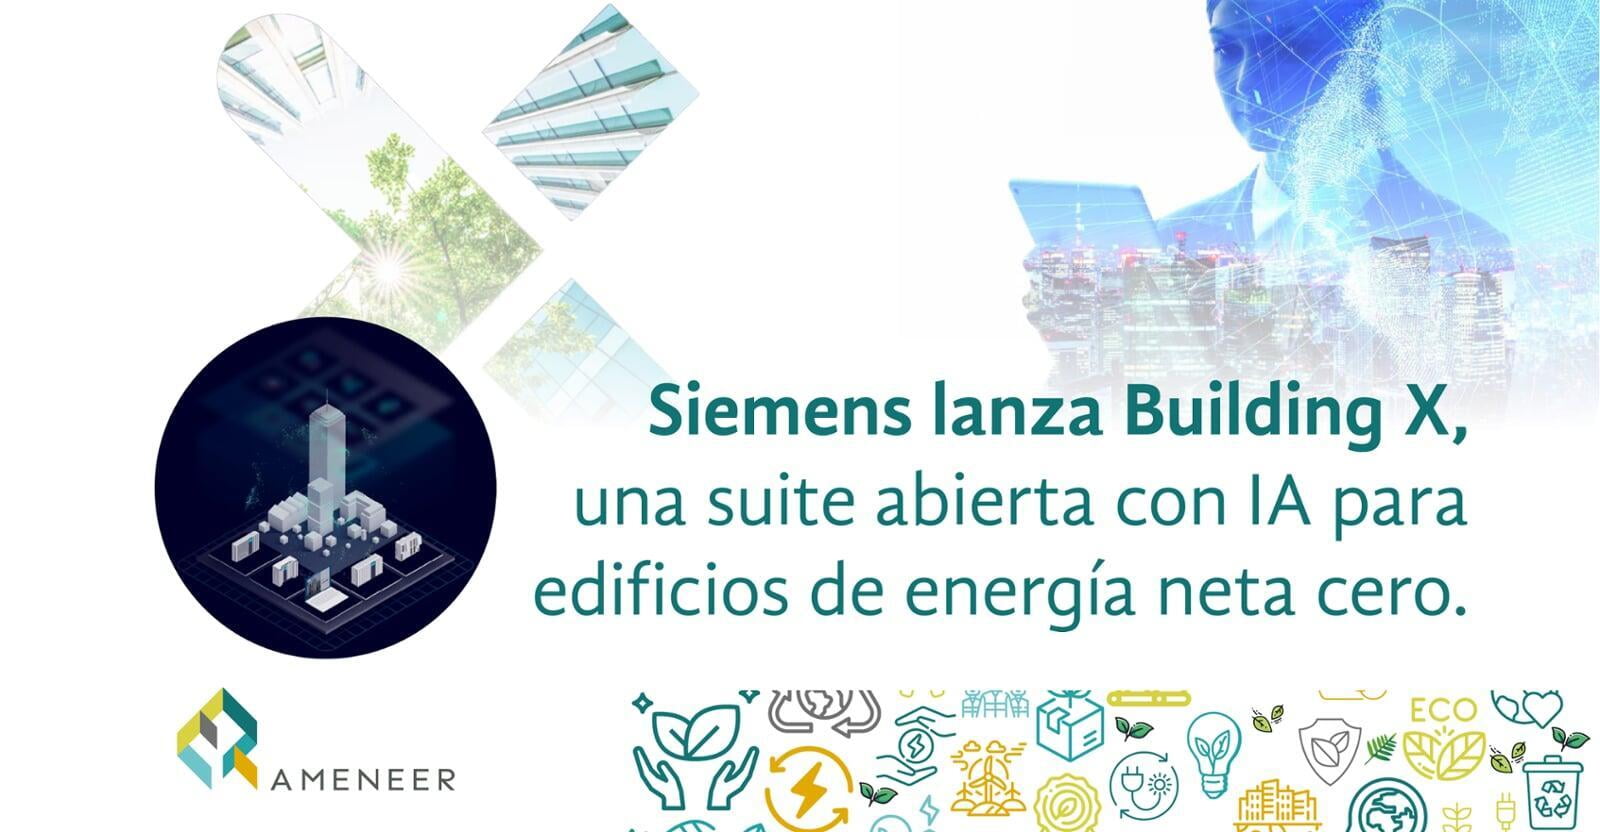 Siemens lanza Building X, una suite abierta con IA para edificios de energía neta cero